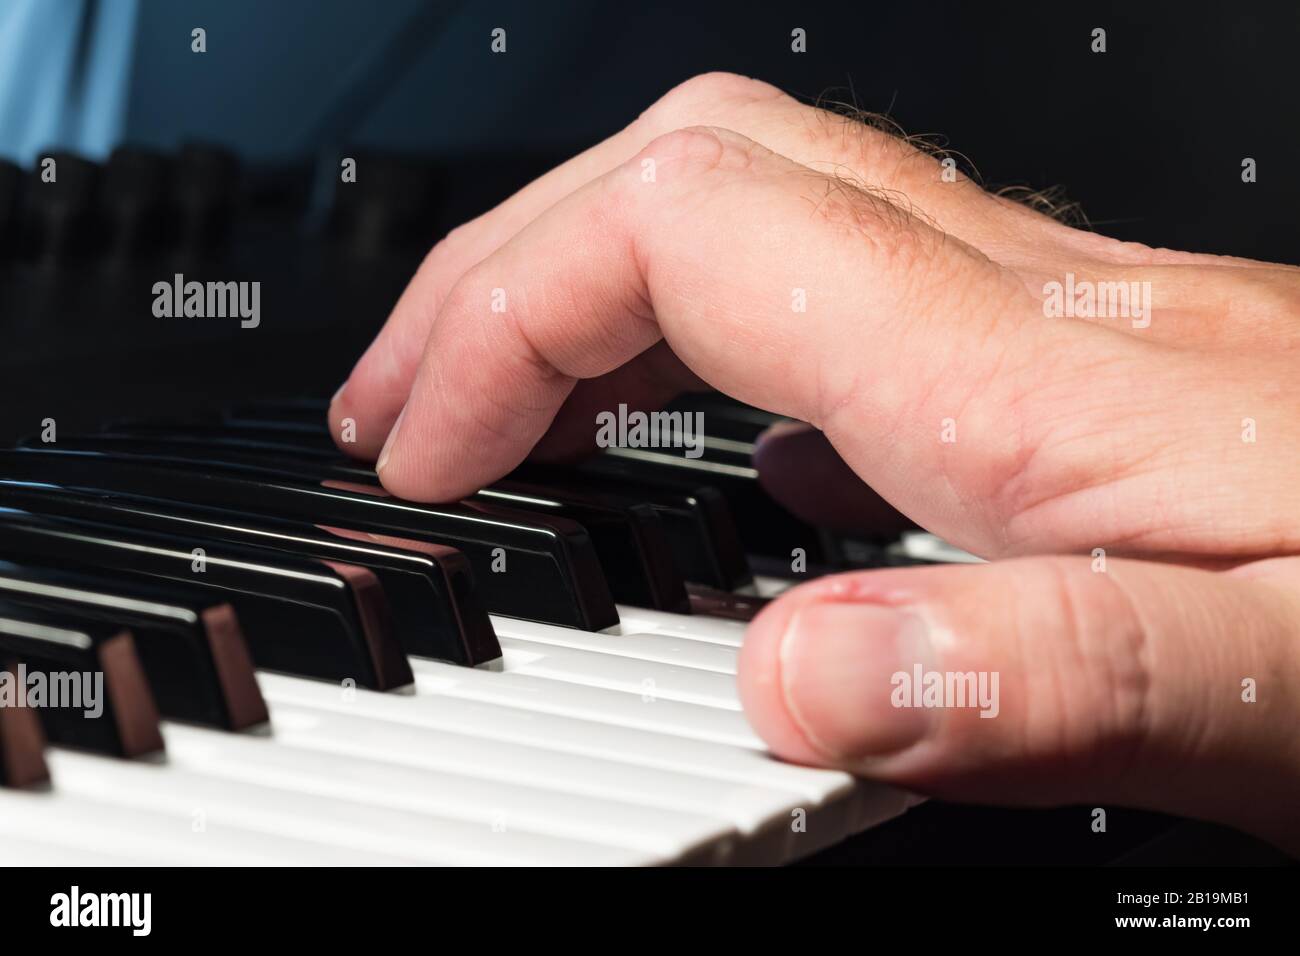 Mano en un piano o teclado sintetizador pulsando teclas o notas para hacer música. Músico tocando notas en un teclado sintetizador. Foto de stock